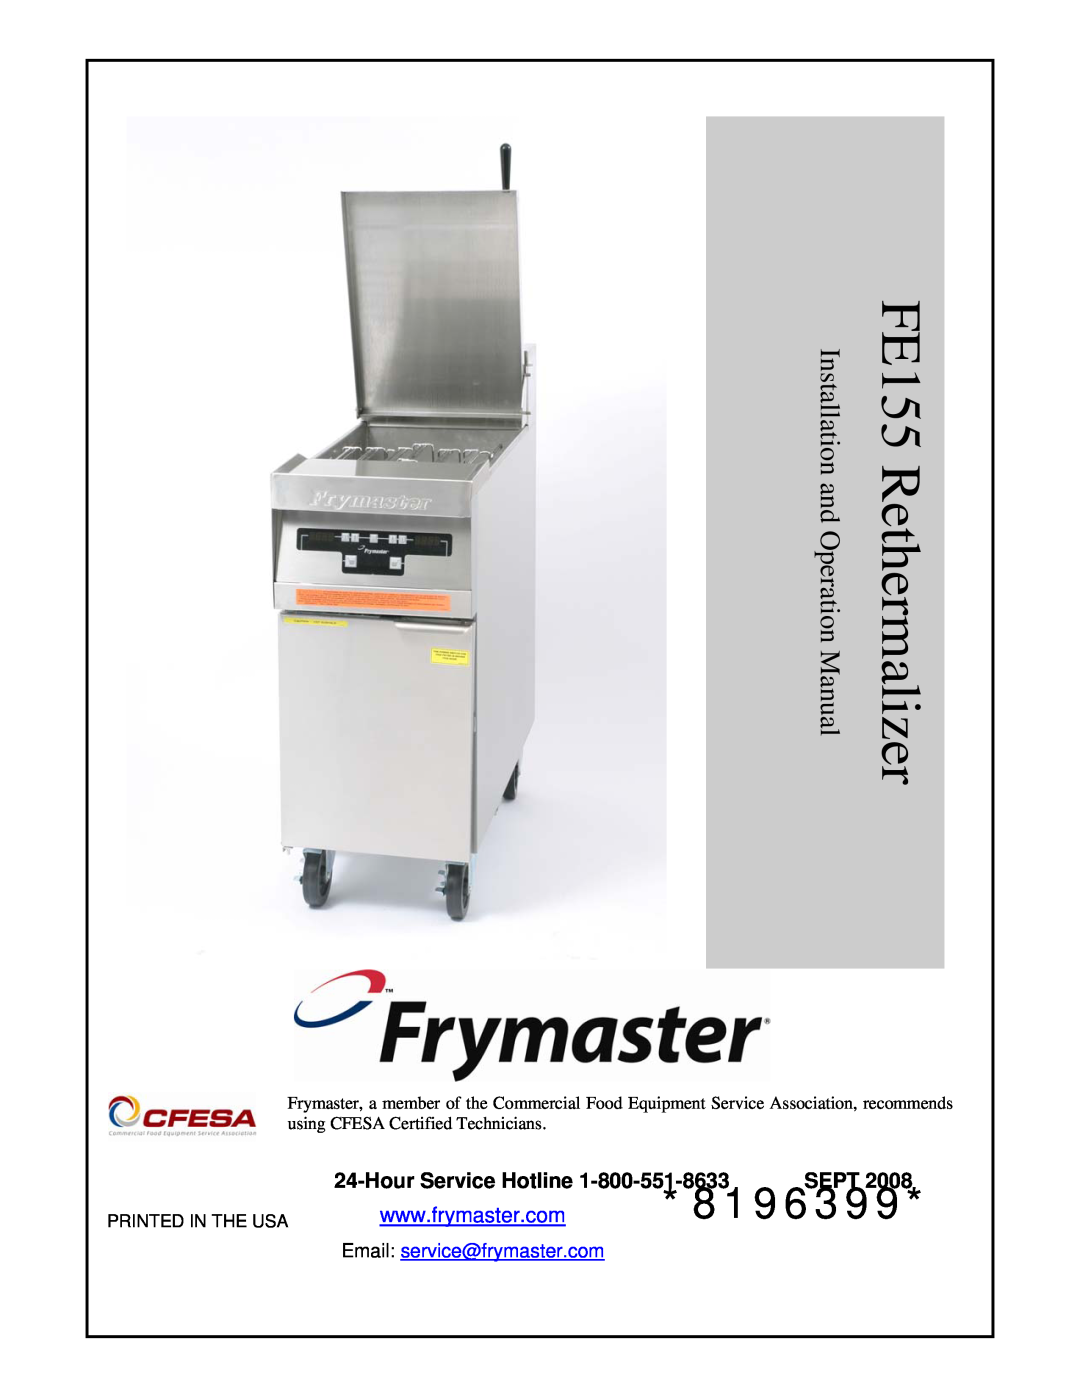 Frymaster operation manual Hour Service Hotline 1-800-551-8633 SEPT, FE155 Rethermalizer, 8196399 